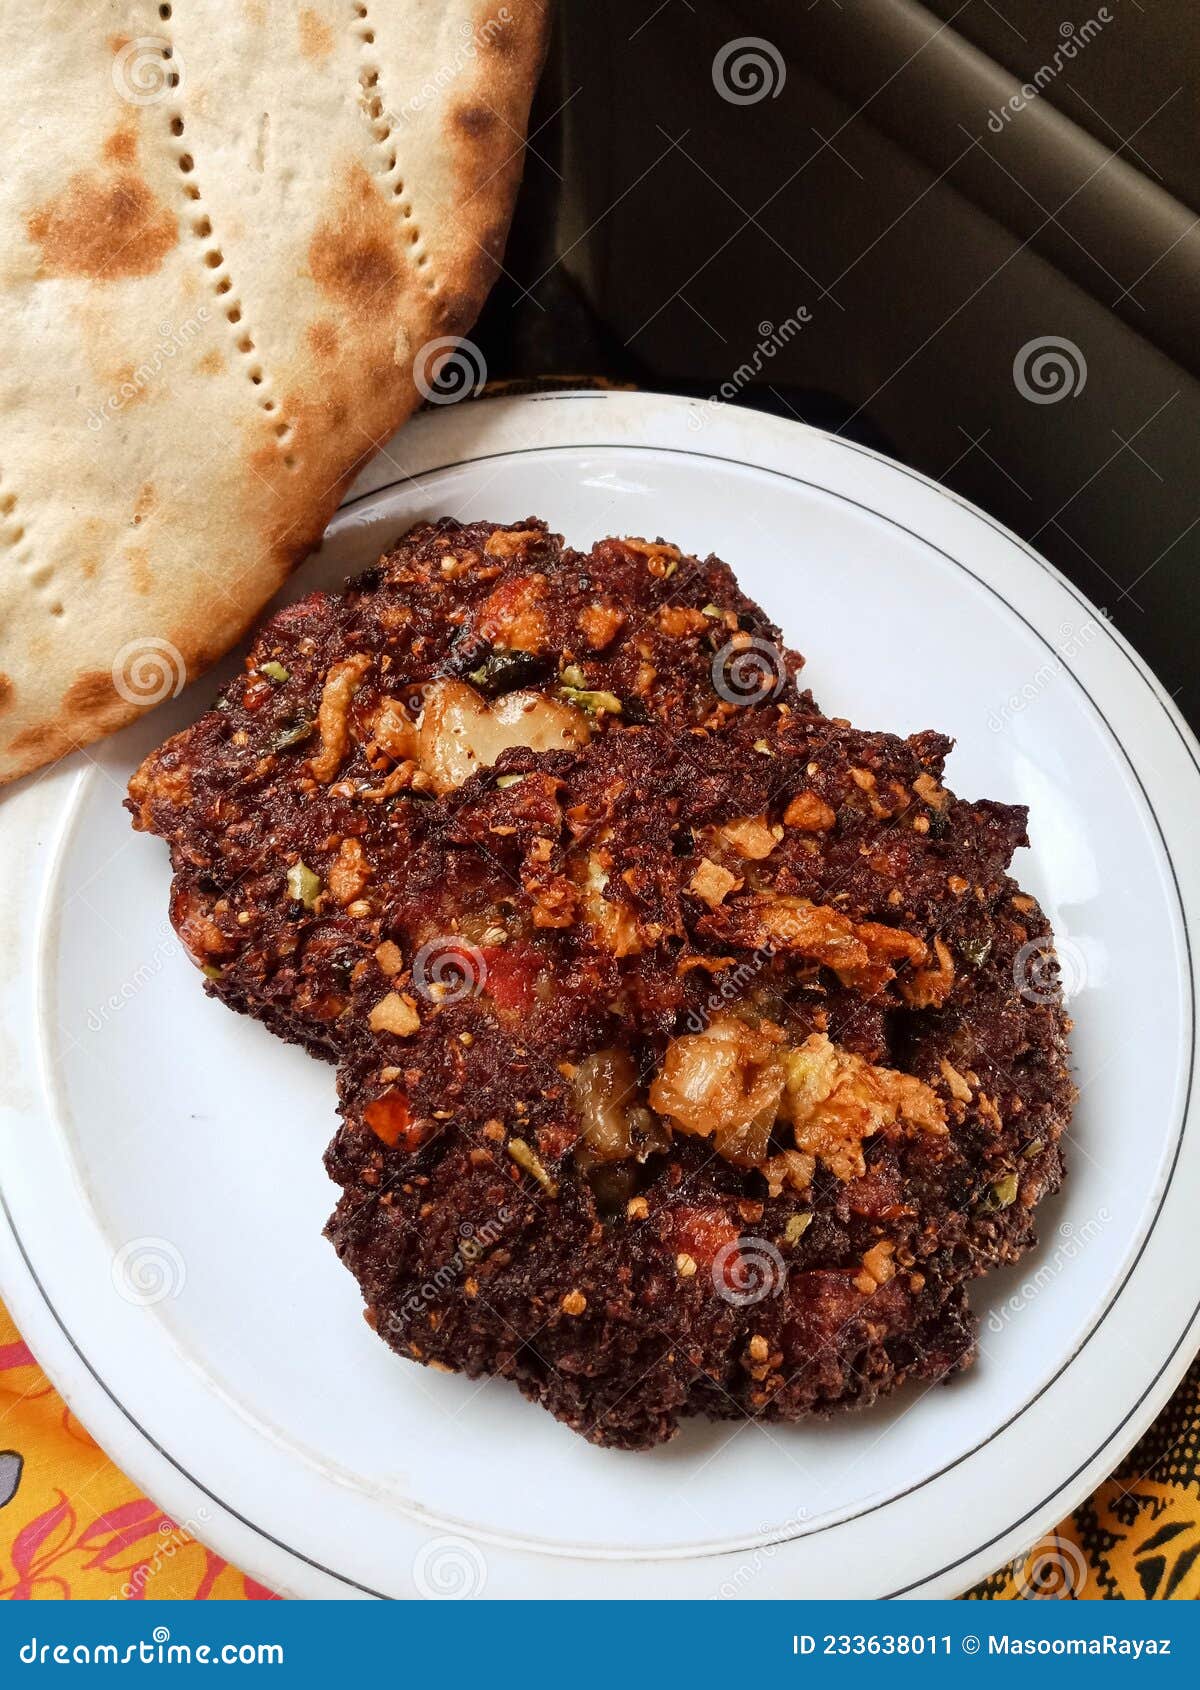 peshawari chapli kebab, khyber pukhtunkhawa